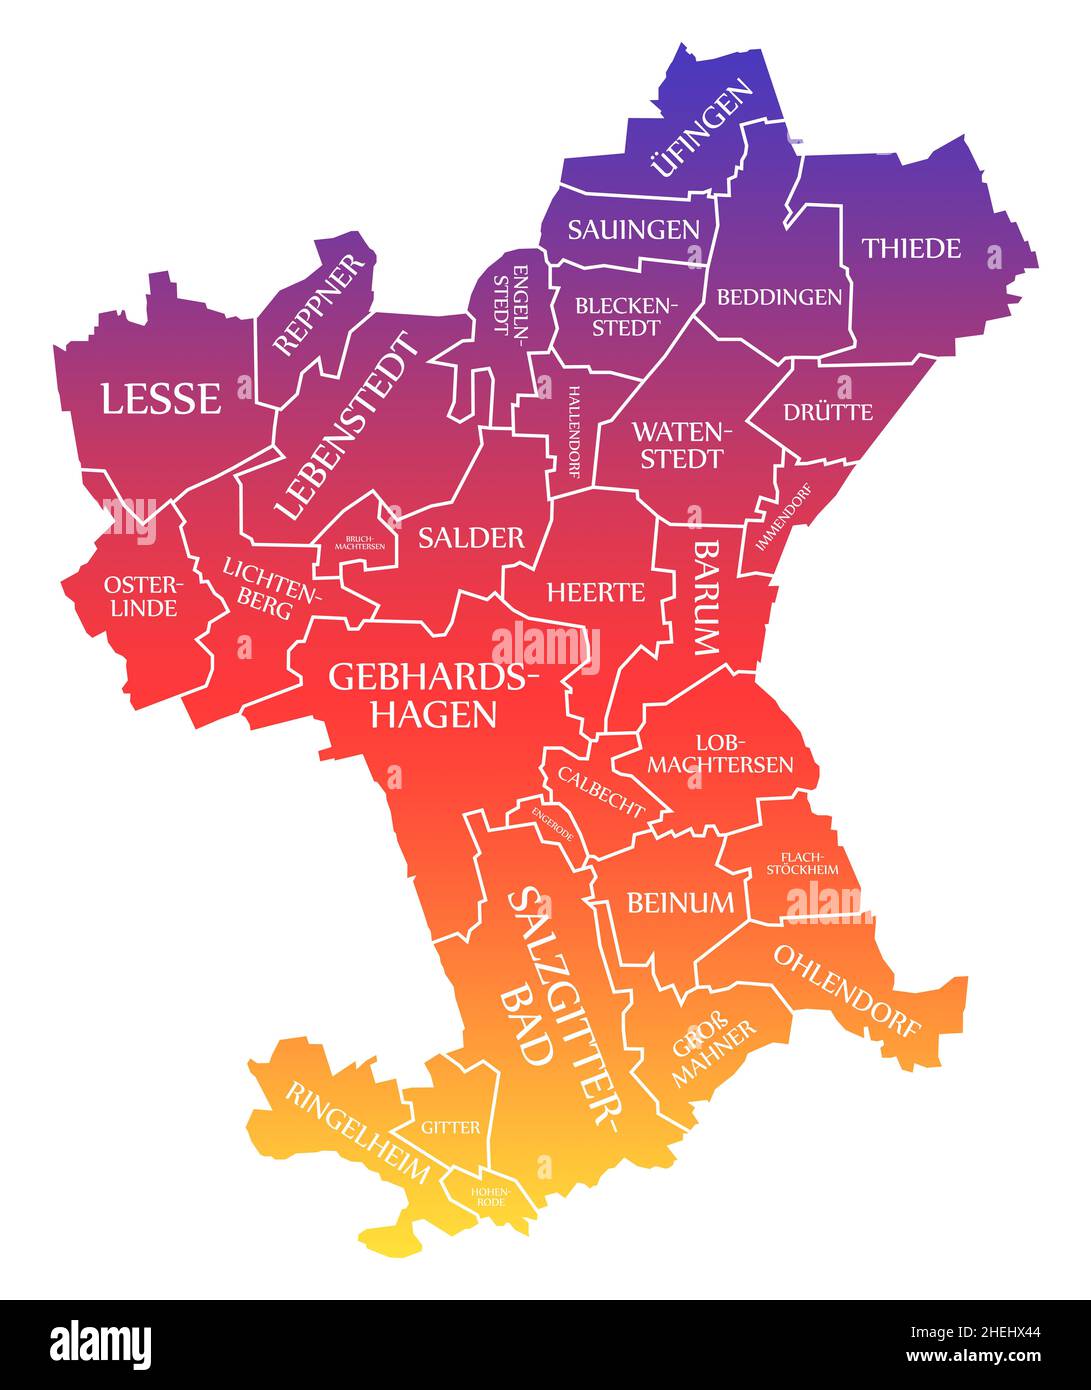 Salzgitter City Map Germania DE etichettato arcobaleno colorato illustrazione Foto Stock